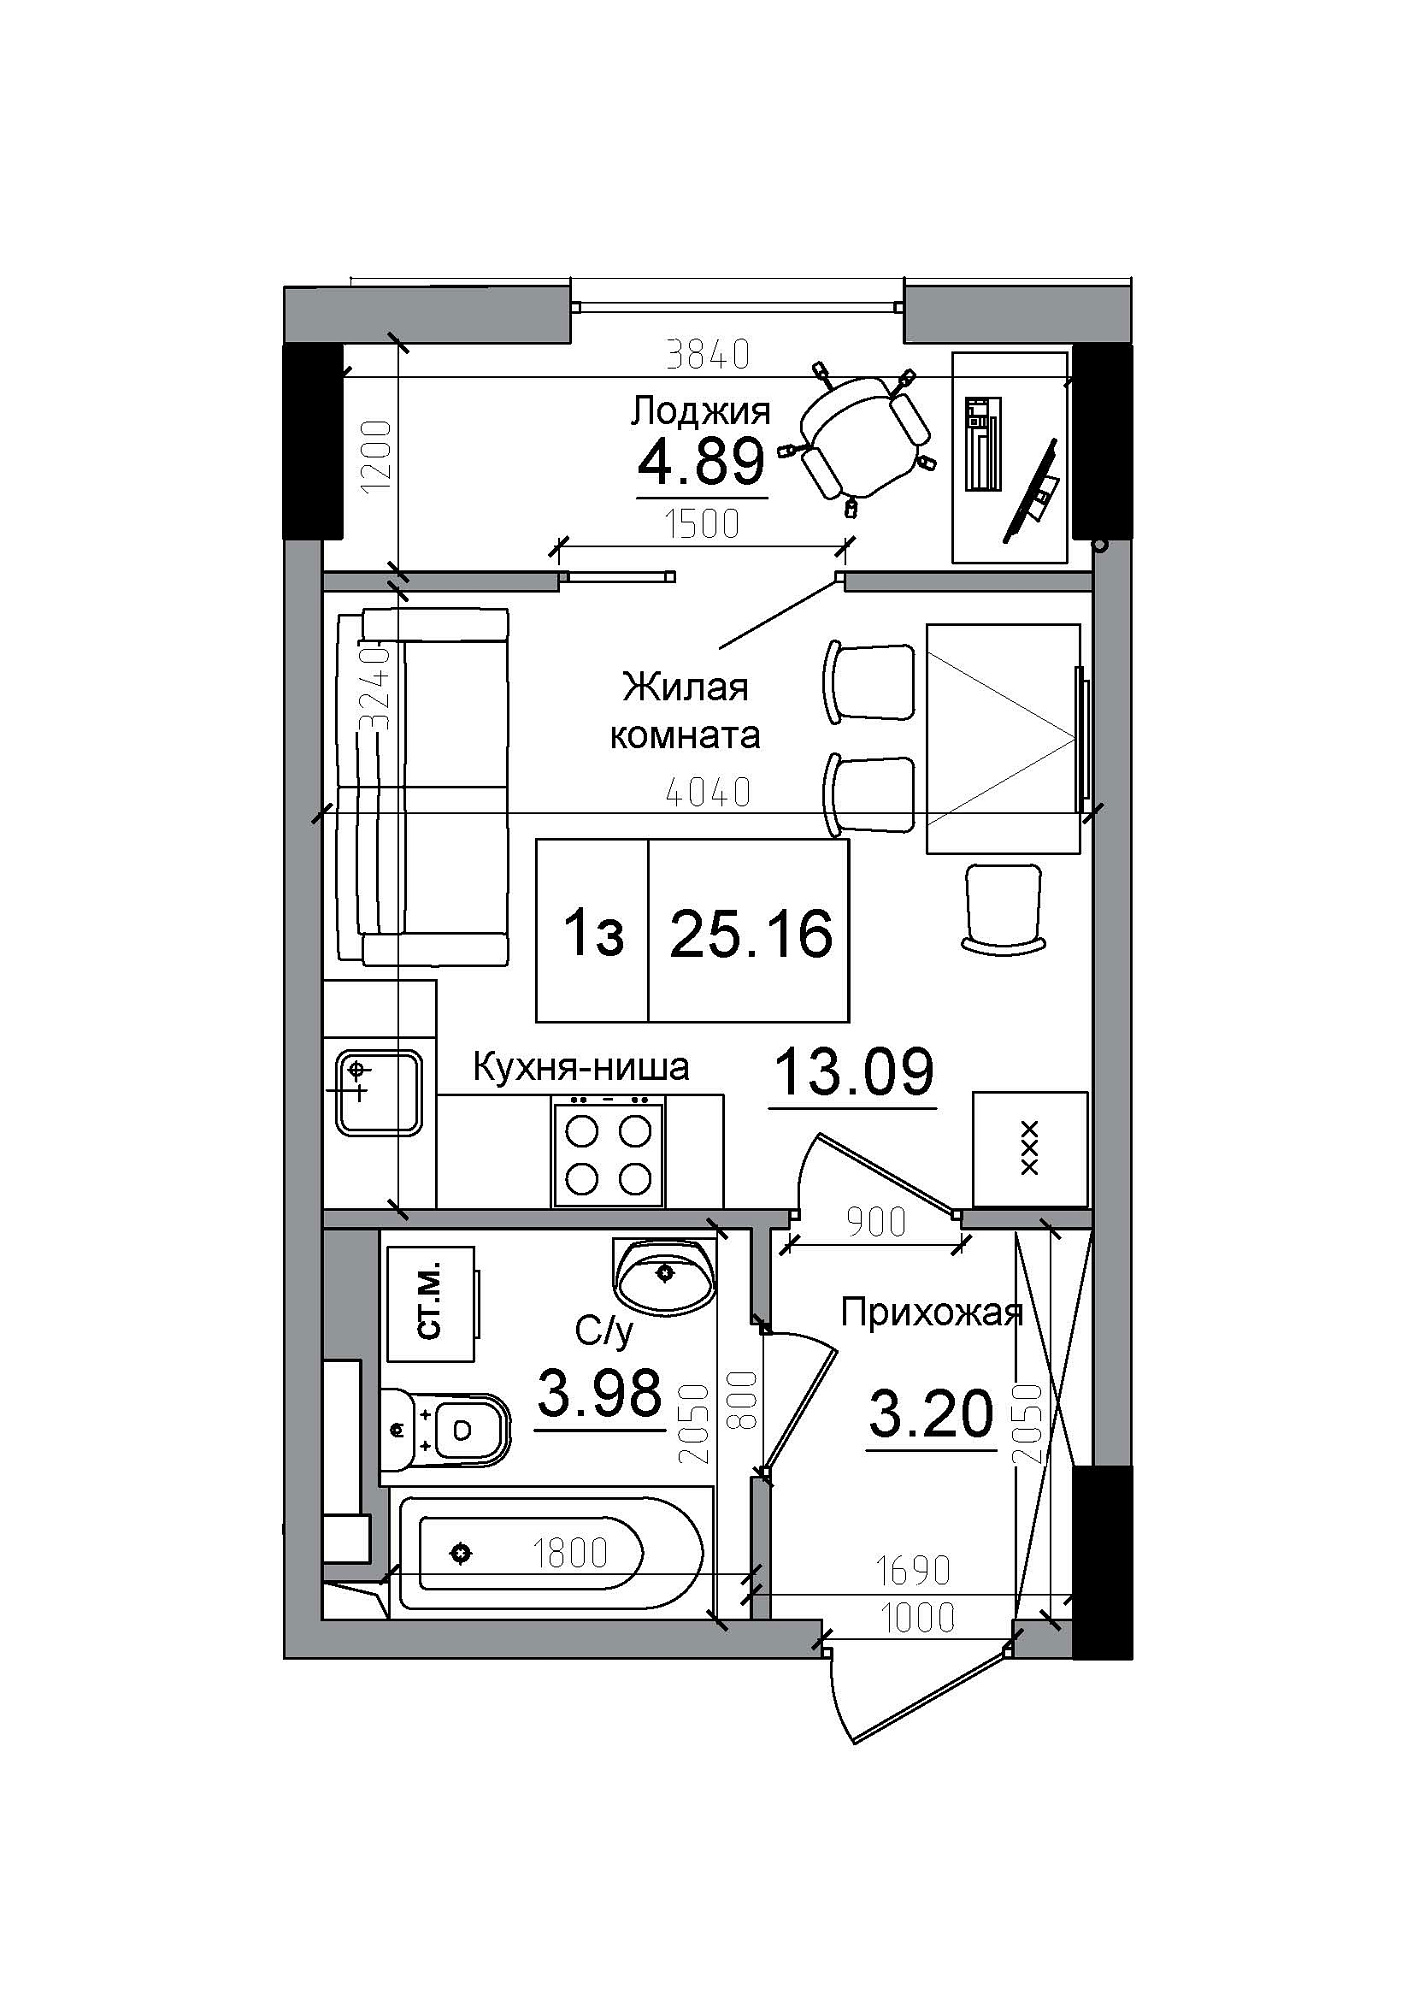 Планування Smart-квартира площею 25.16м2, AB-12-07/00009.